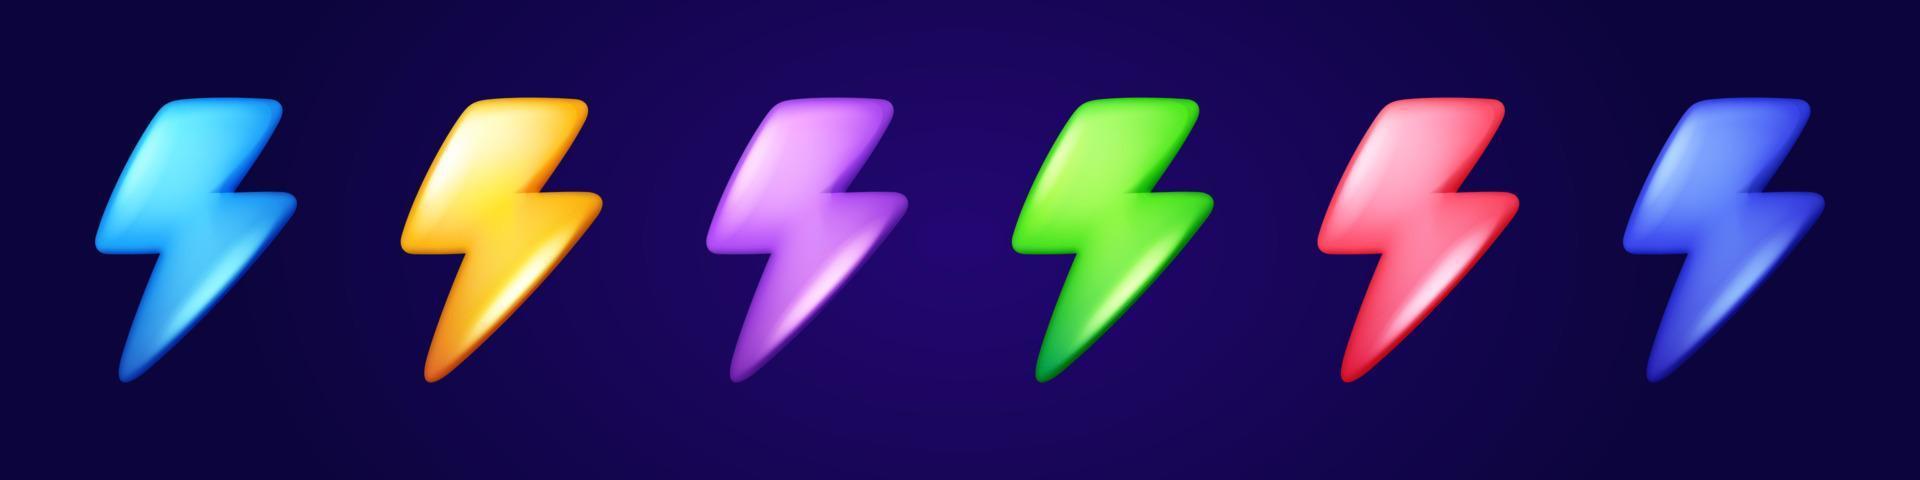 Reihe von Blitzsymbolen in verschiedenen Farben vektor